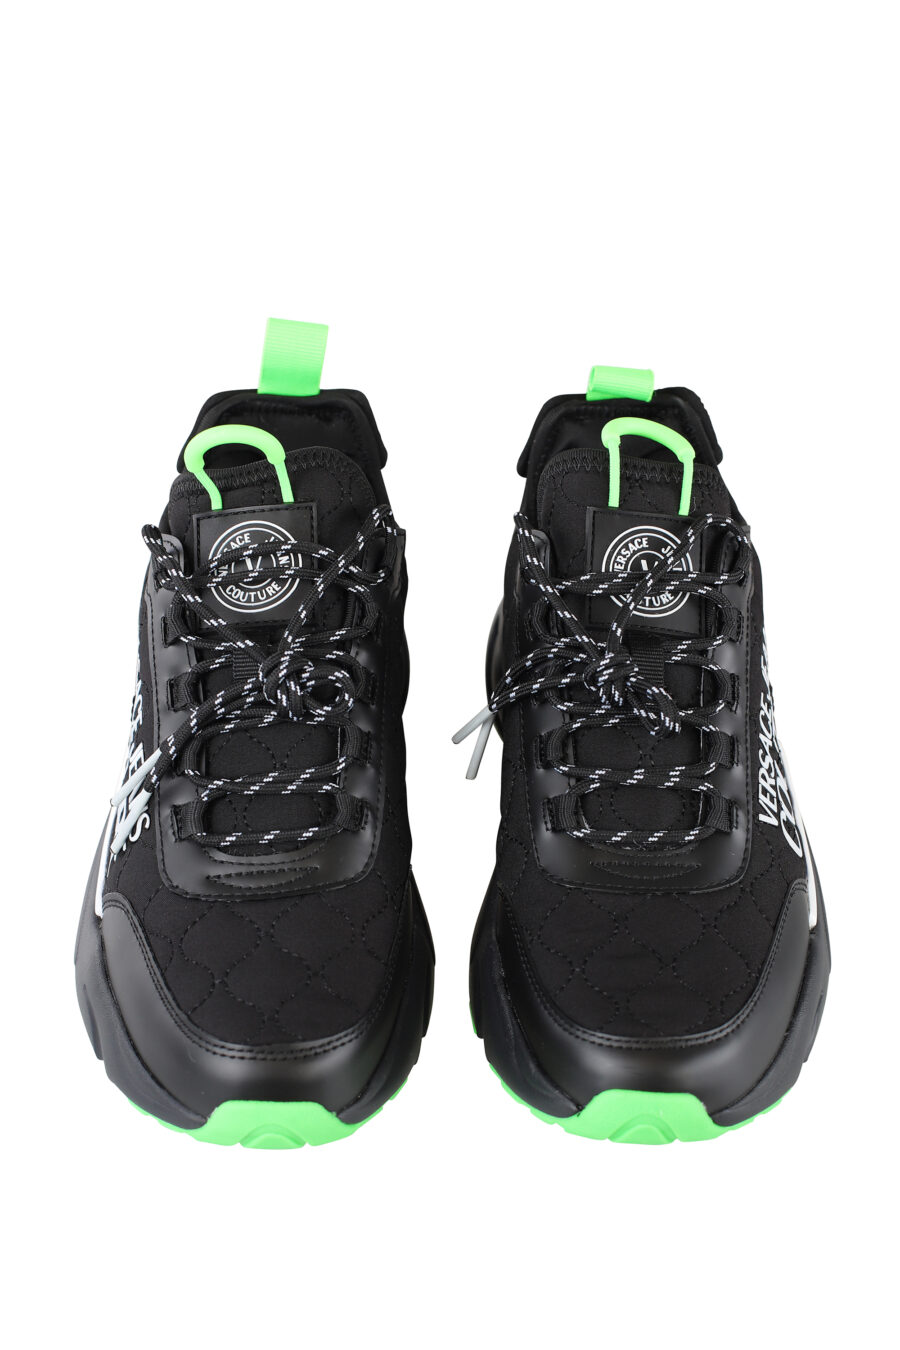 Zapatillas negras con detalles verdes y maxilogo blanco - IMG 6717